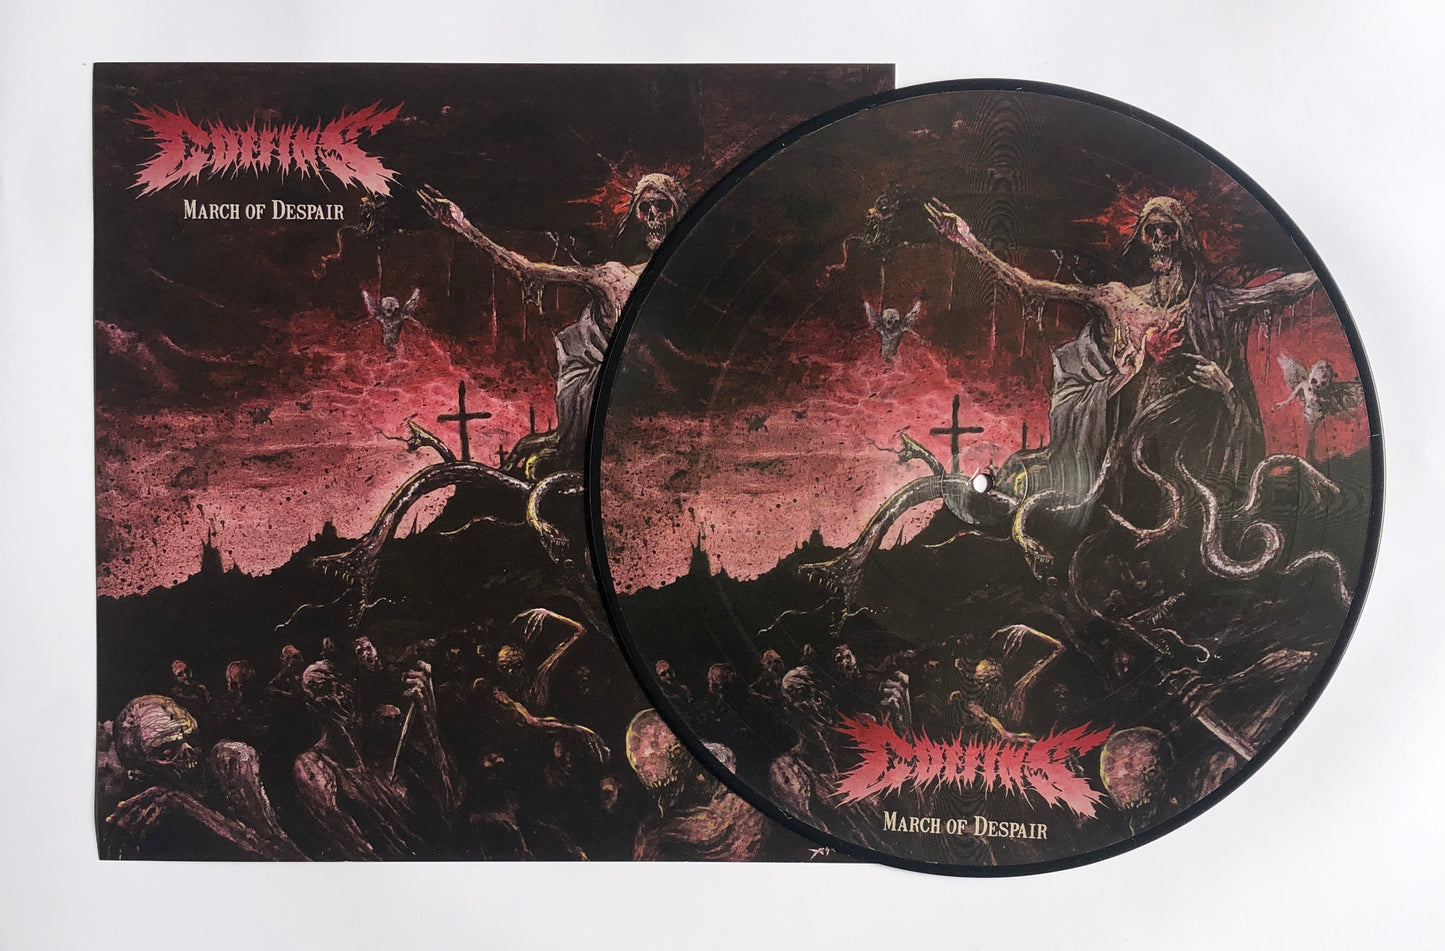 Coffins (Jpn) "March of Despair" - 12" LP (Picture Disc)